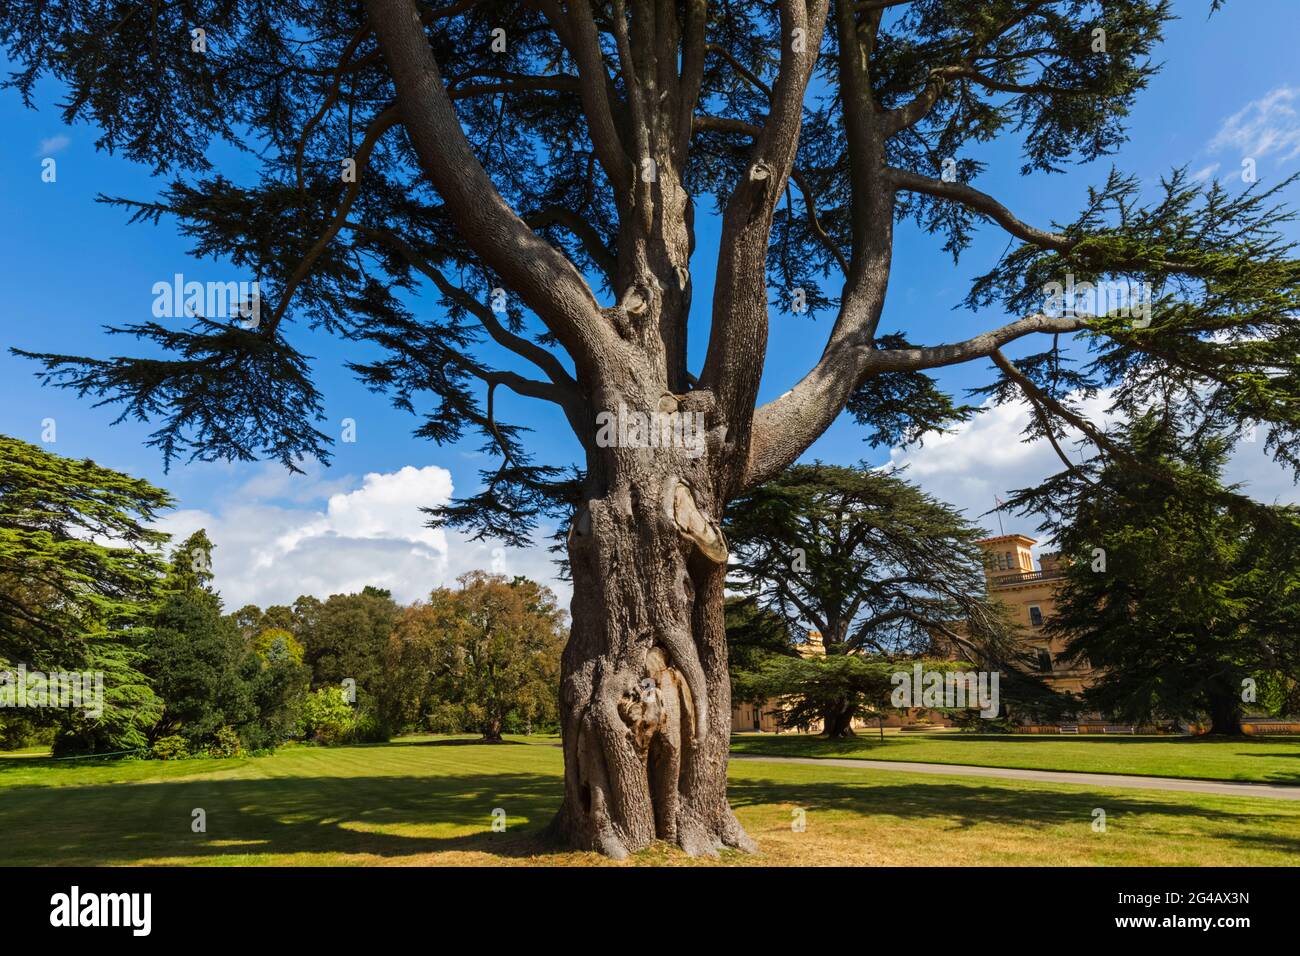 Angleterre, île de Wight, East Cowes, Osborne House, l'ancienne maison palatiale de la reine Victoria et du prince Albert, arbres dans le jardin Banque D'Images